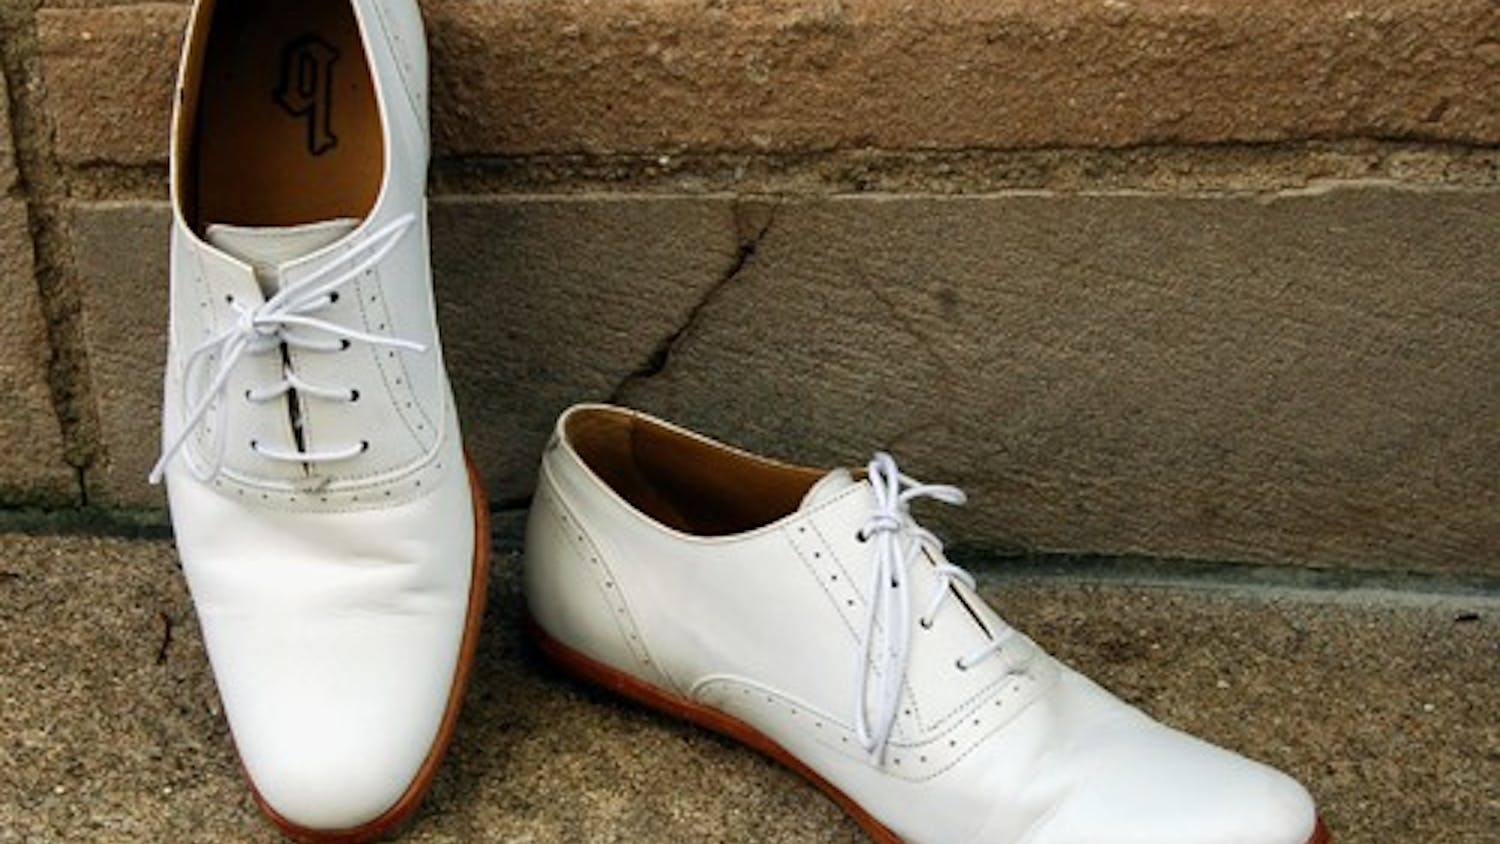 Simply smokin' white shoes.